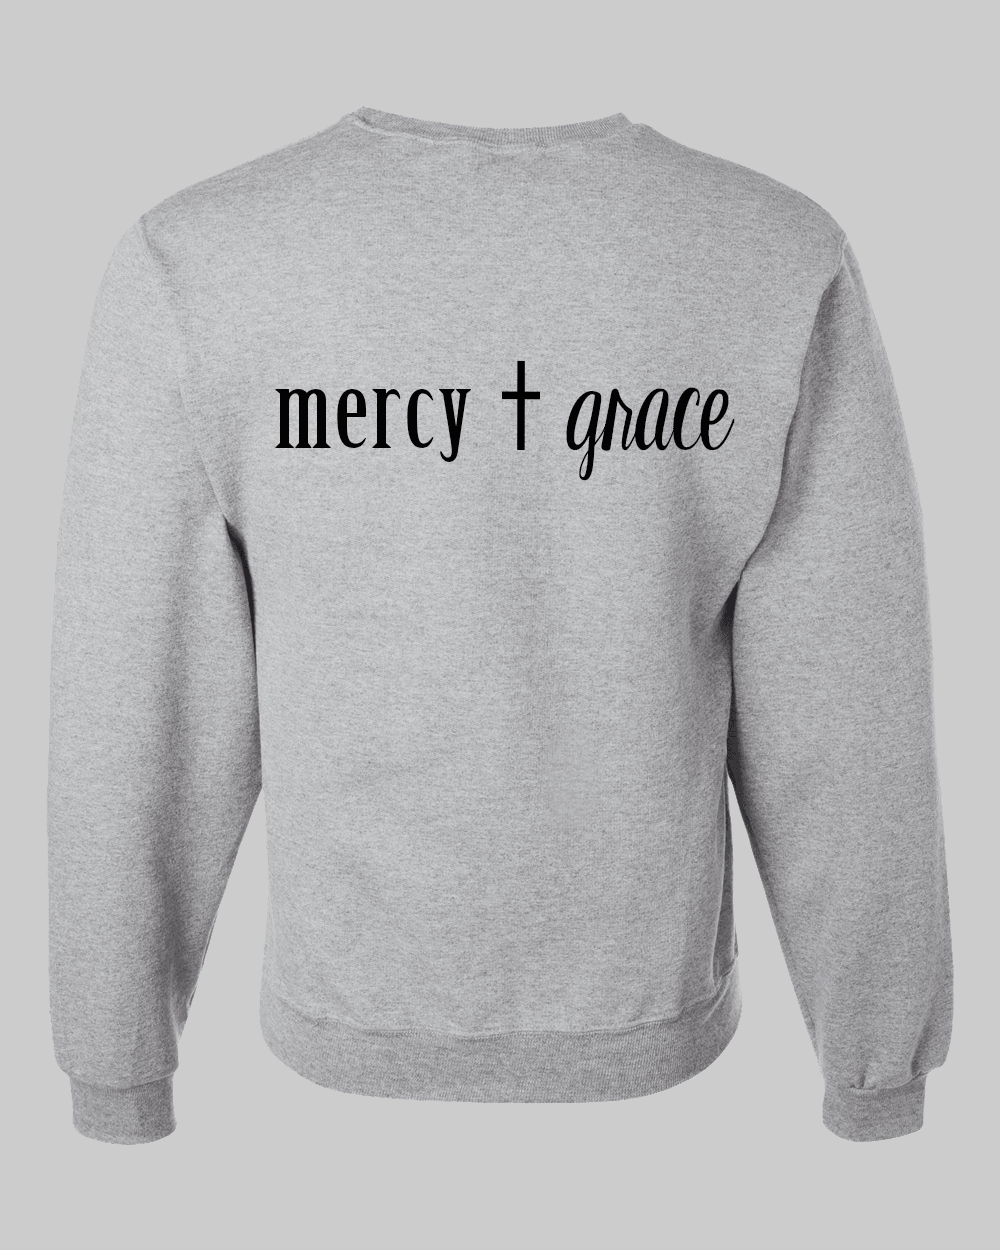 Trust in the Lord Unisex Grey Fleece Sweatshirt - Mercy Plus Grace